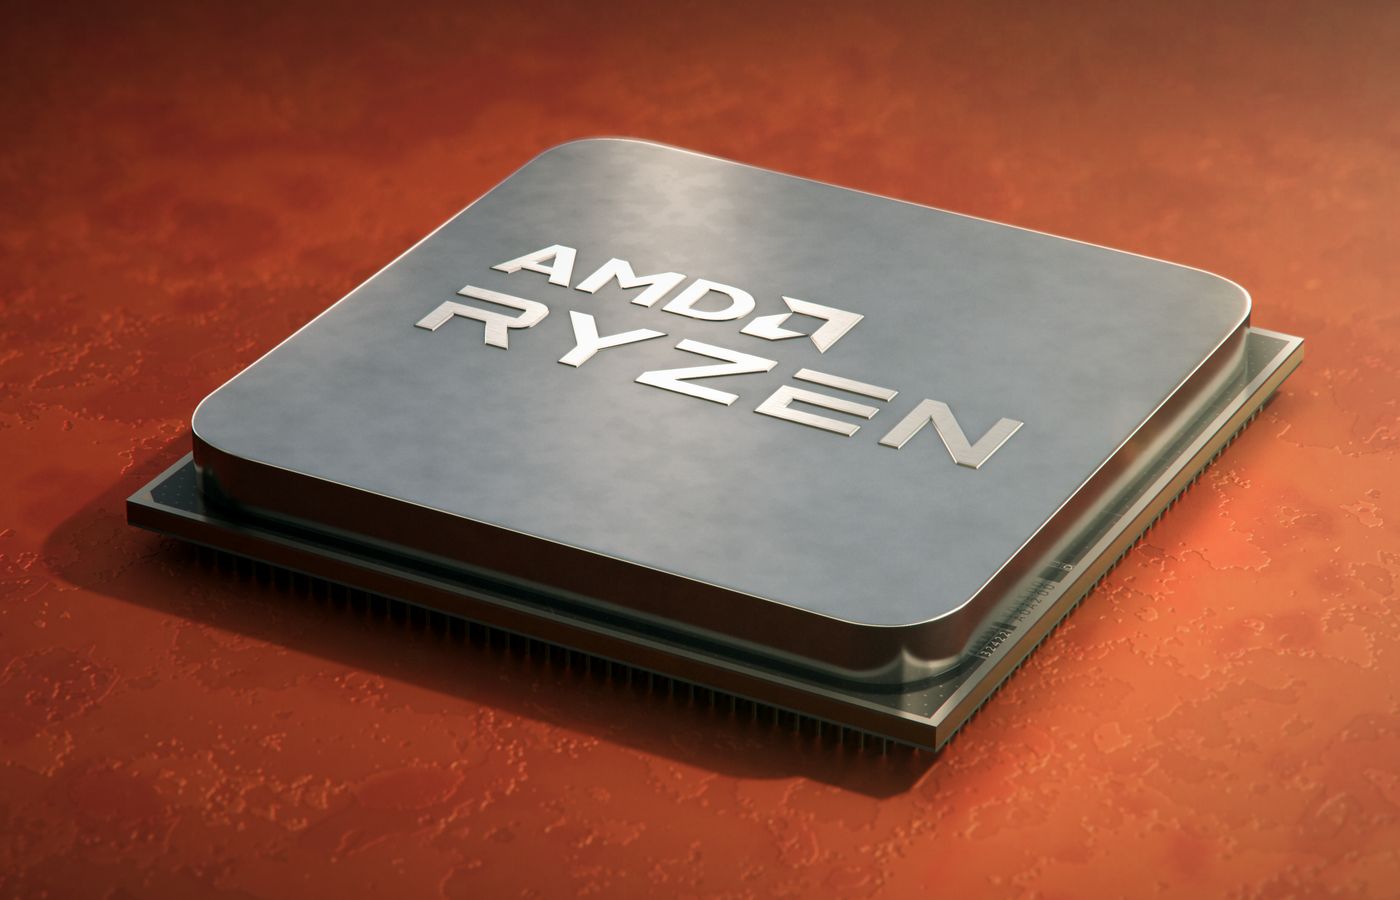 AMD sur le point de dépasser Intel sur le marché du CPU desktop selon les données PassMark